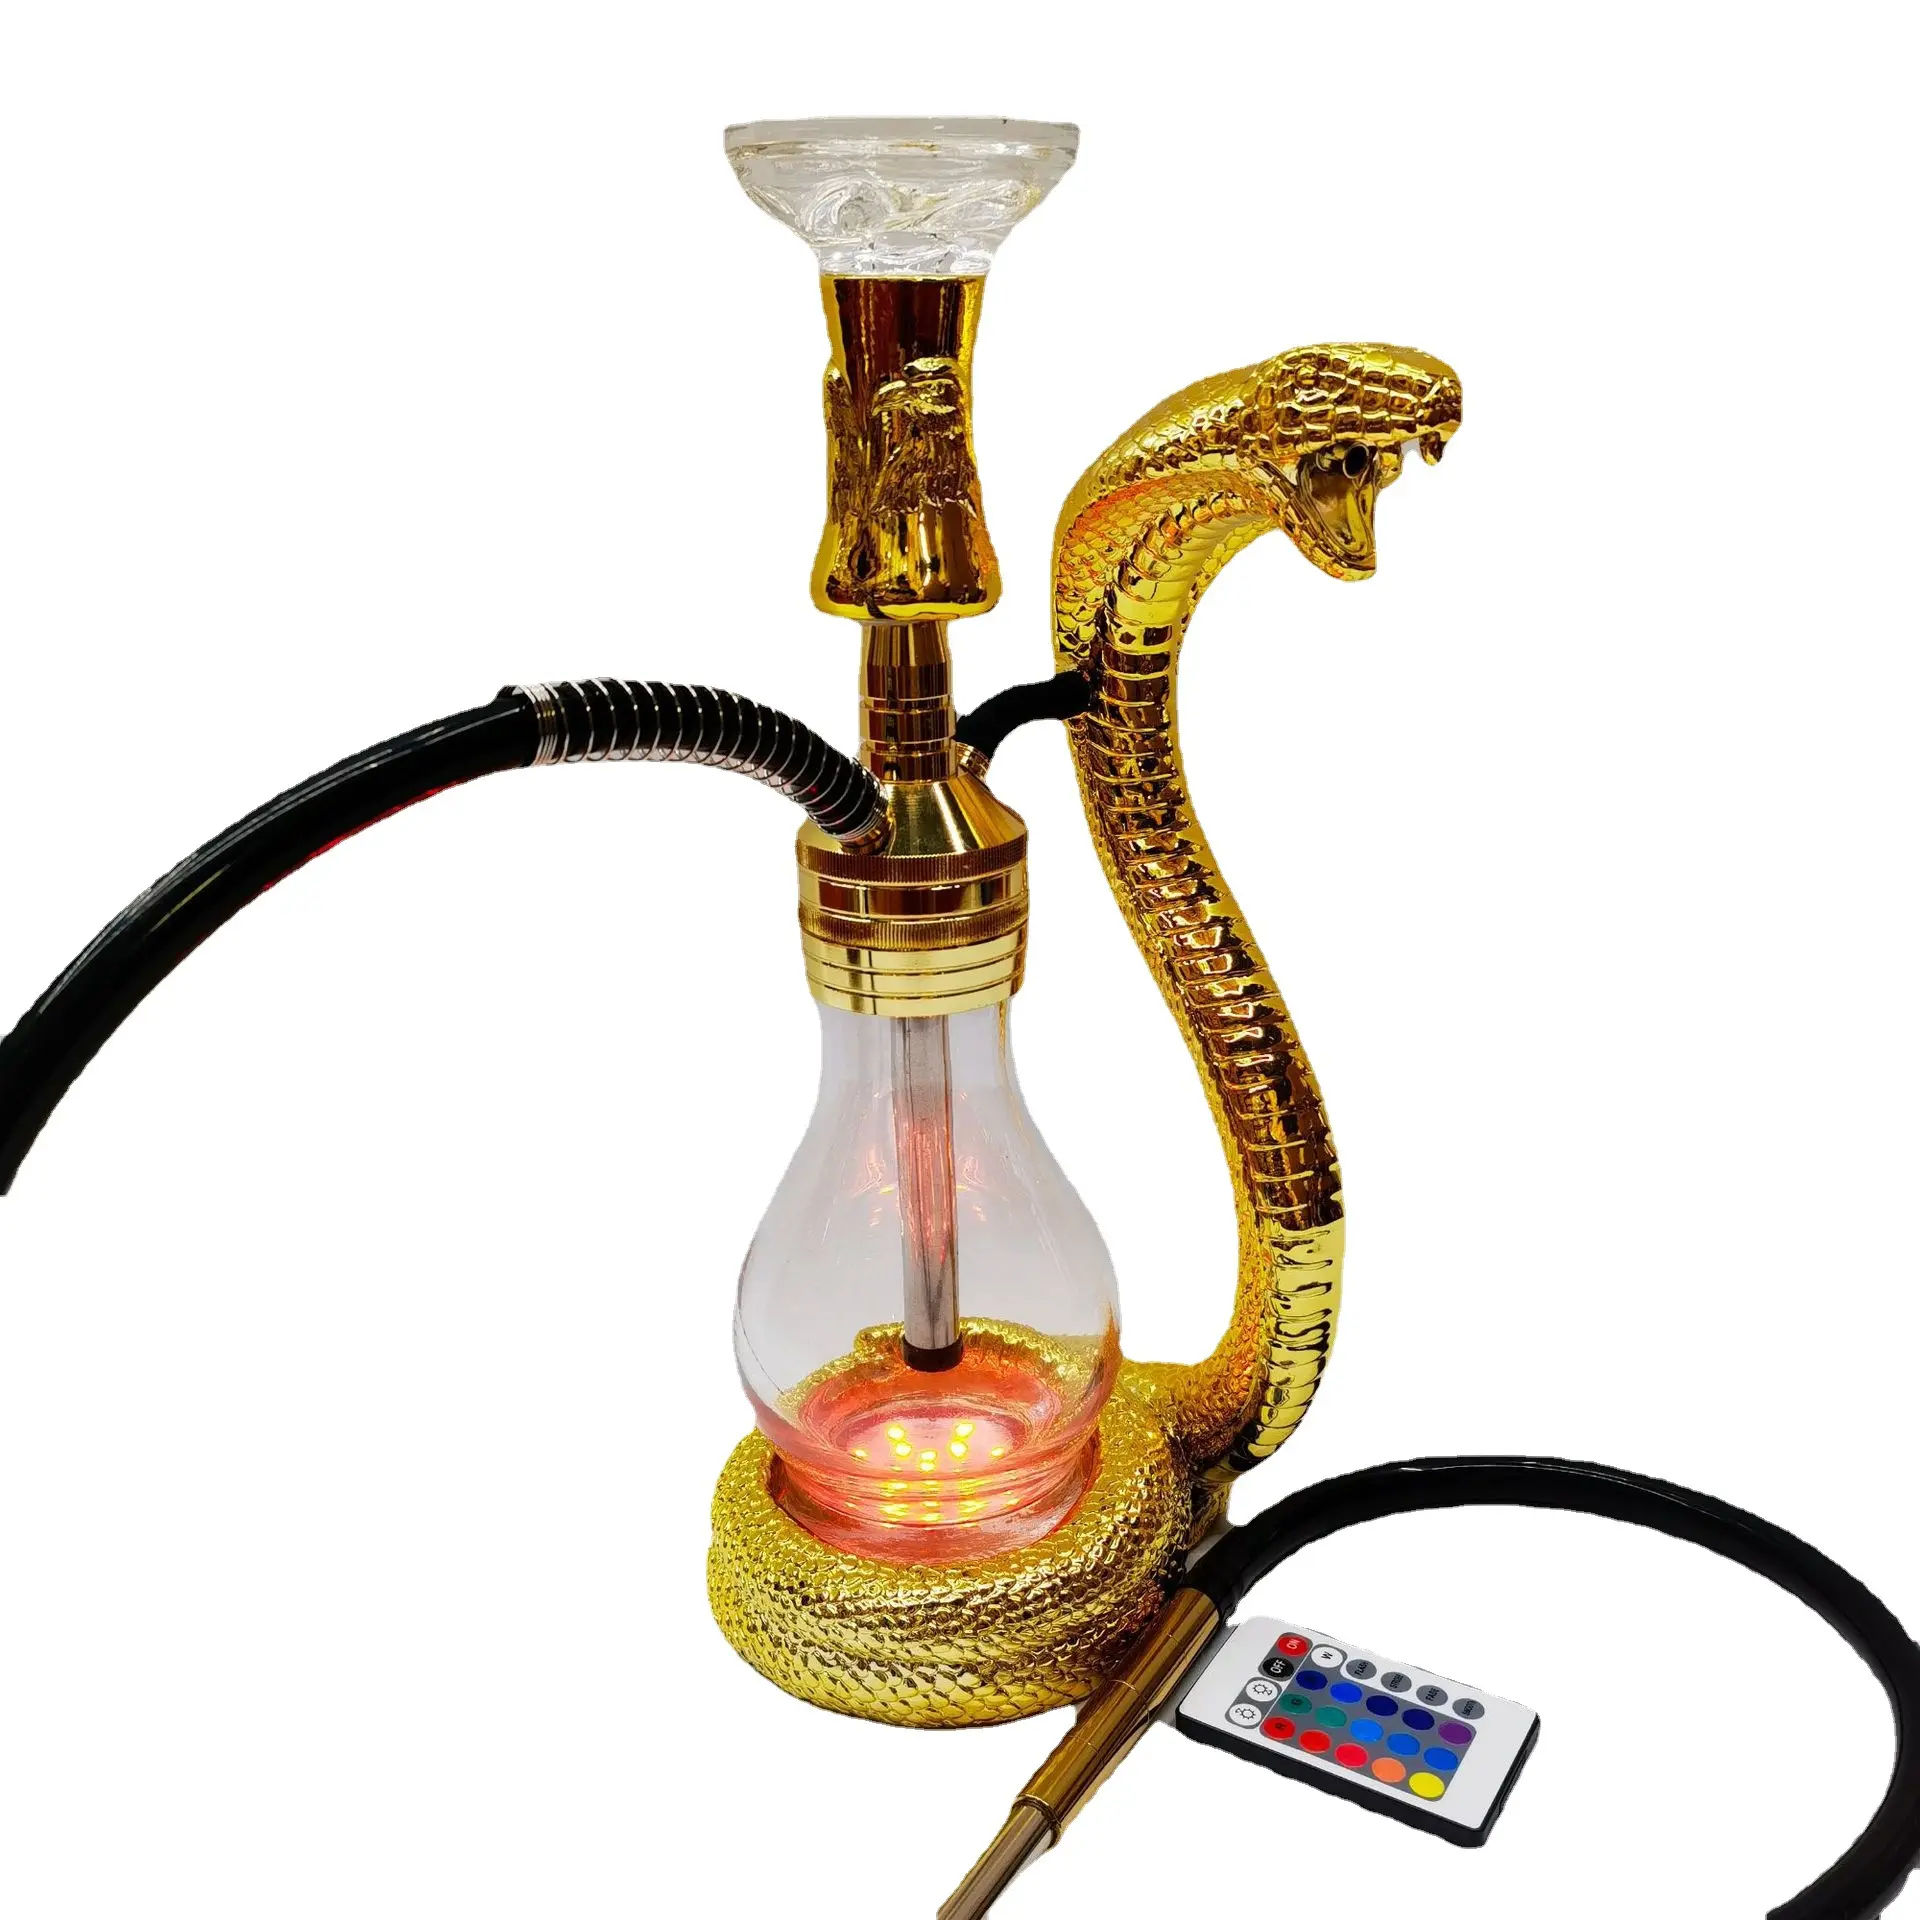 新しいデザインの喫煙アクセサリーシーシャウォーターボトル水ギセルスネークシェイプアラビア語シーシャ水ギセルセット